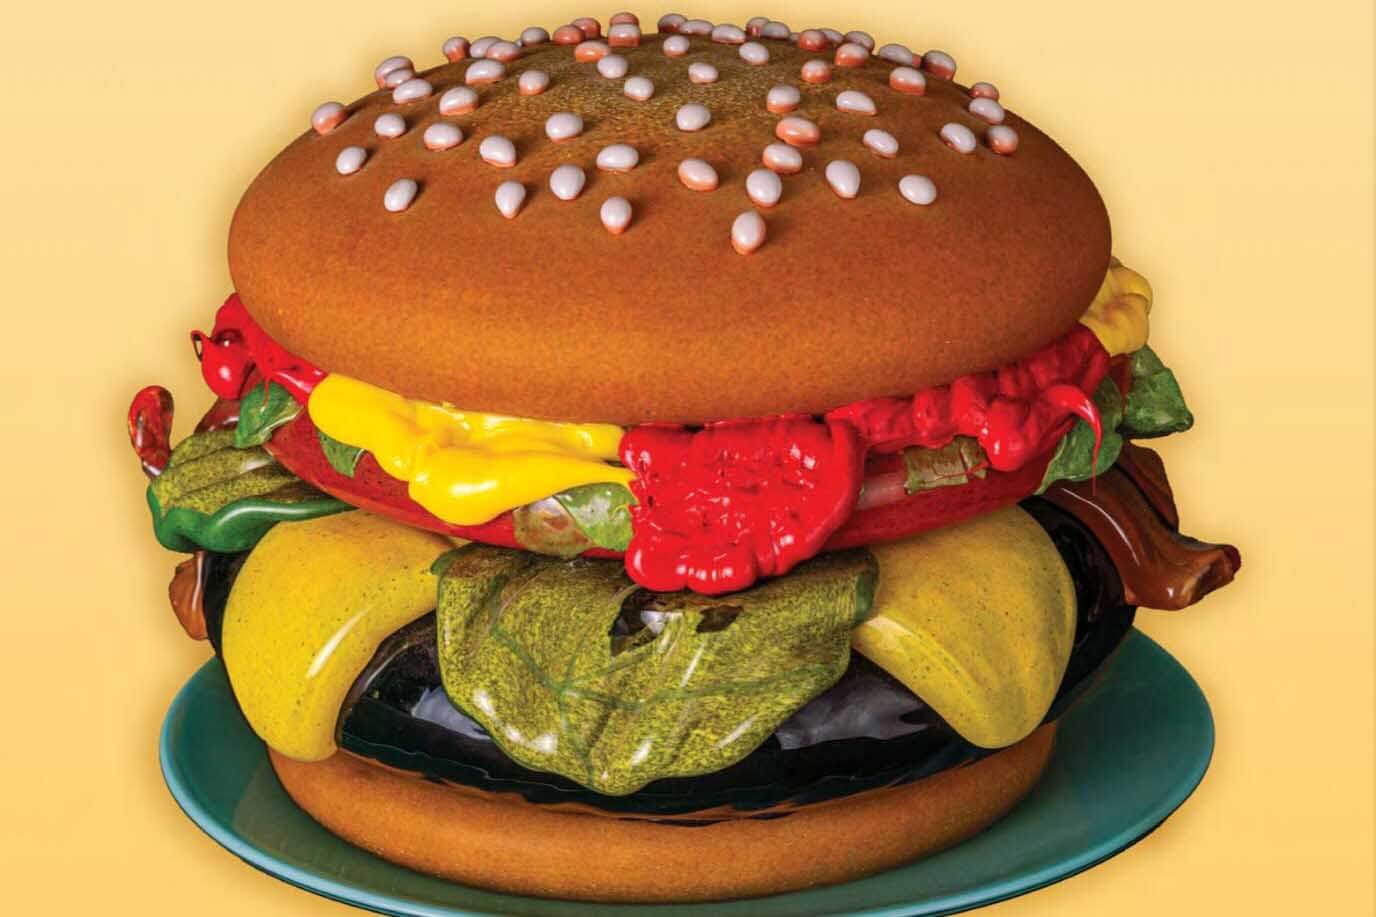 Order Up hamburger